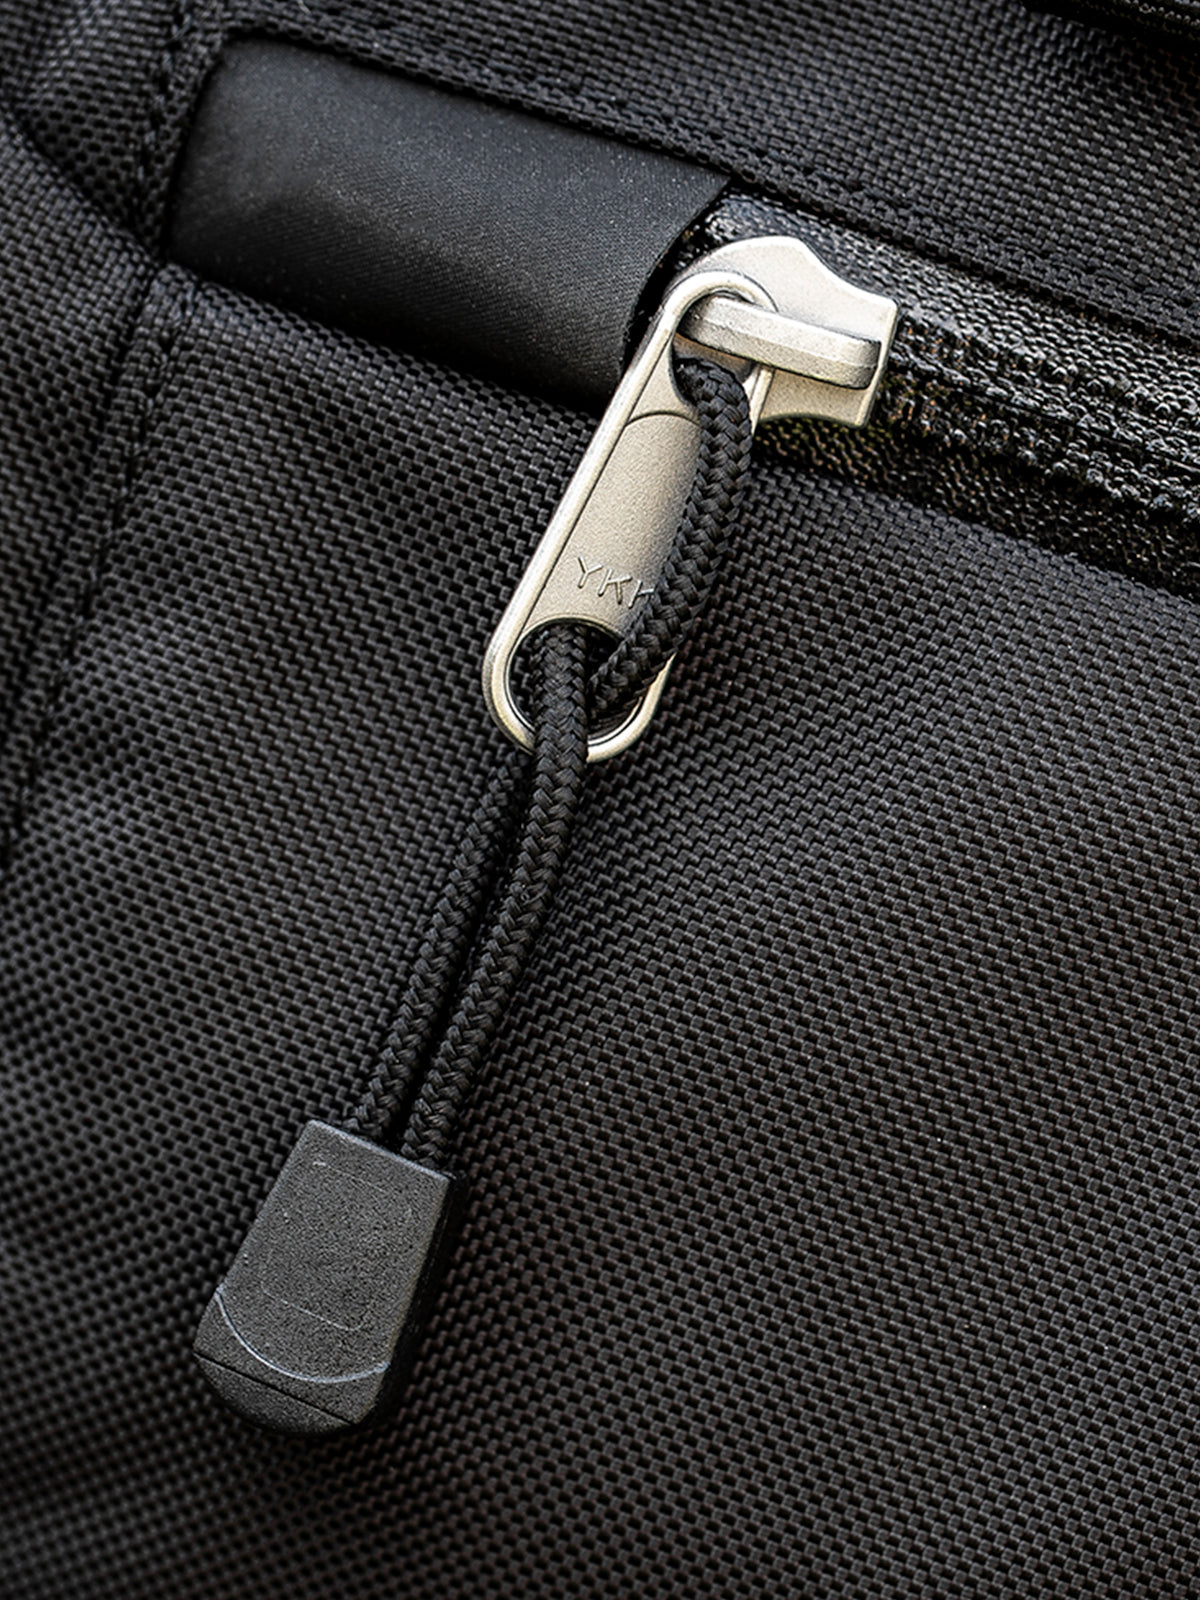 Kriega US20 Drypack YKK zip